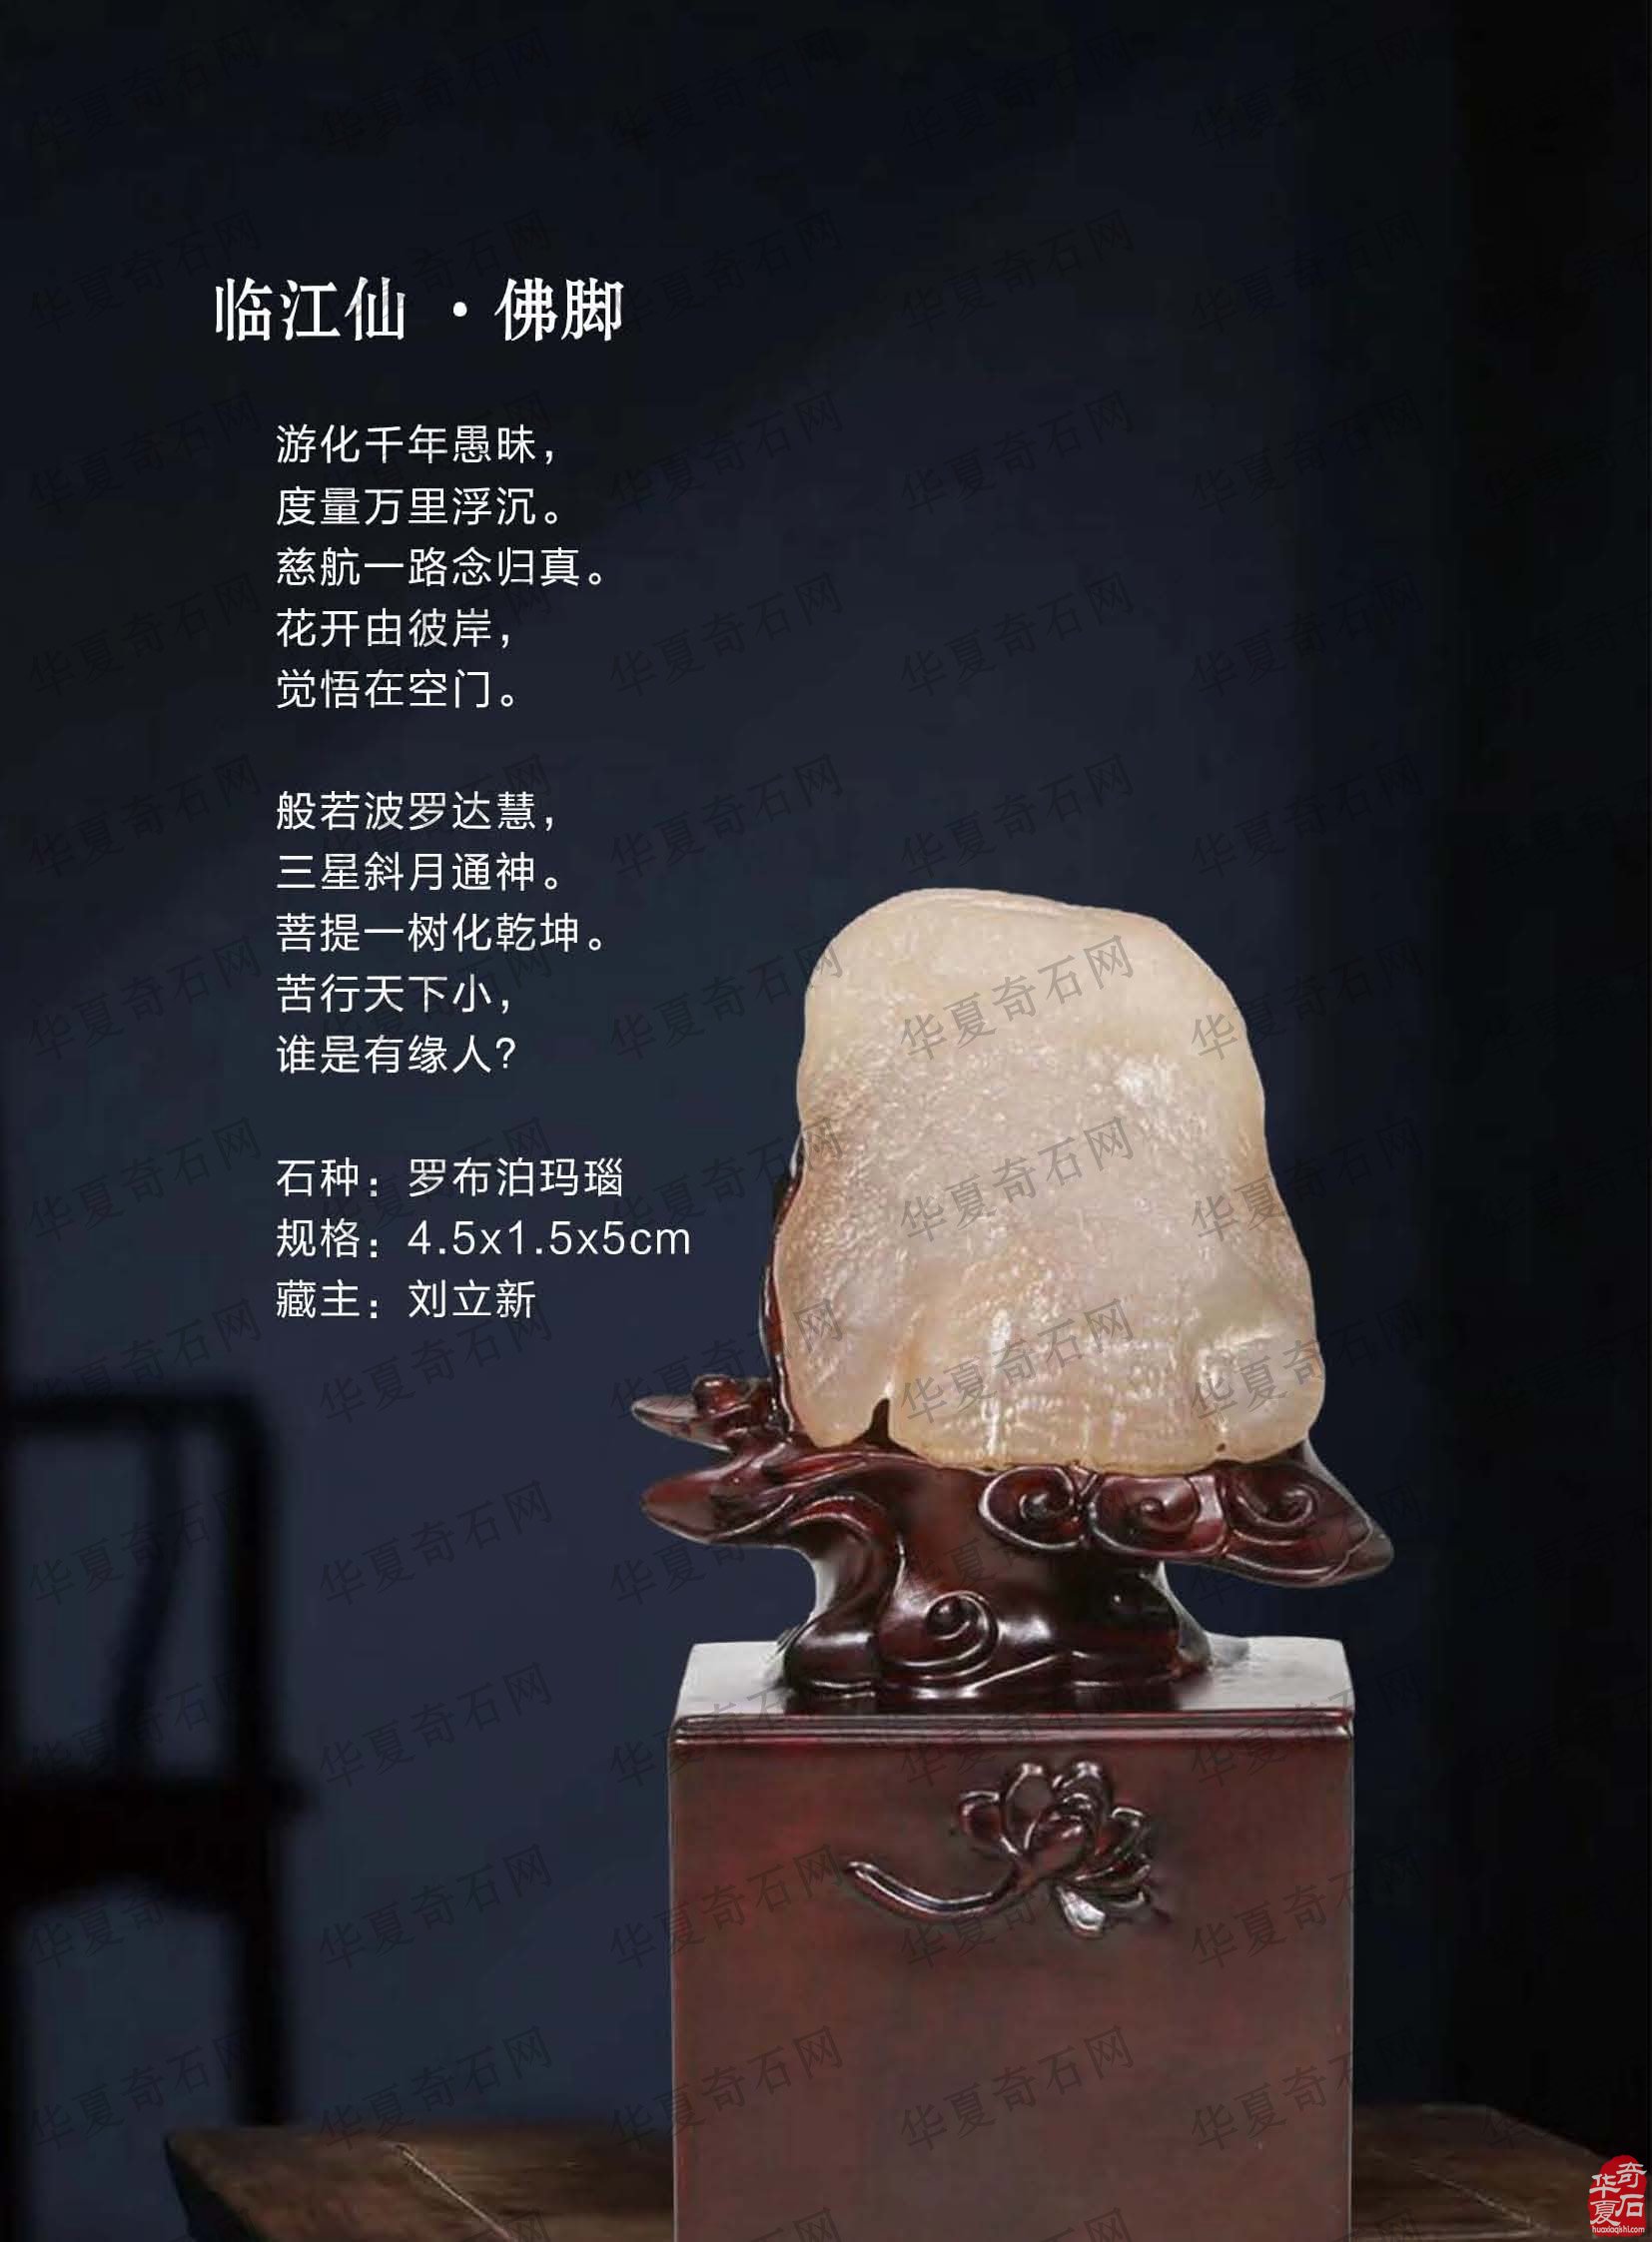 再看《于公赏石》独推石界“黑马”刘立新